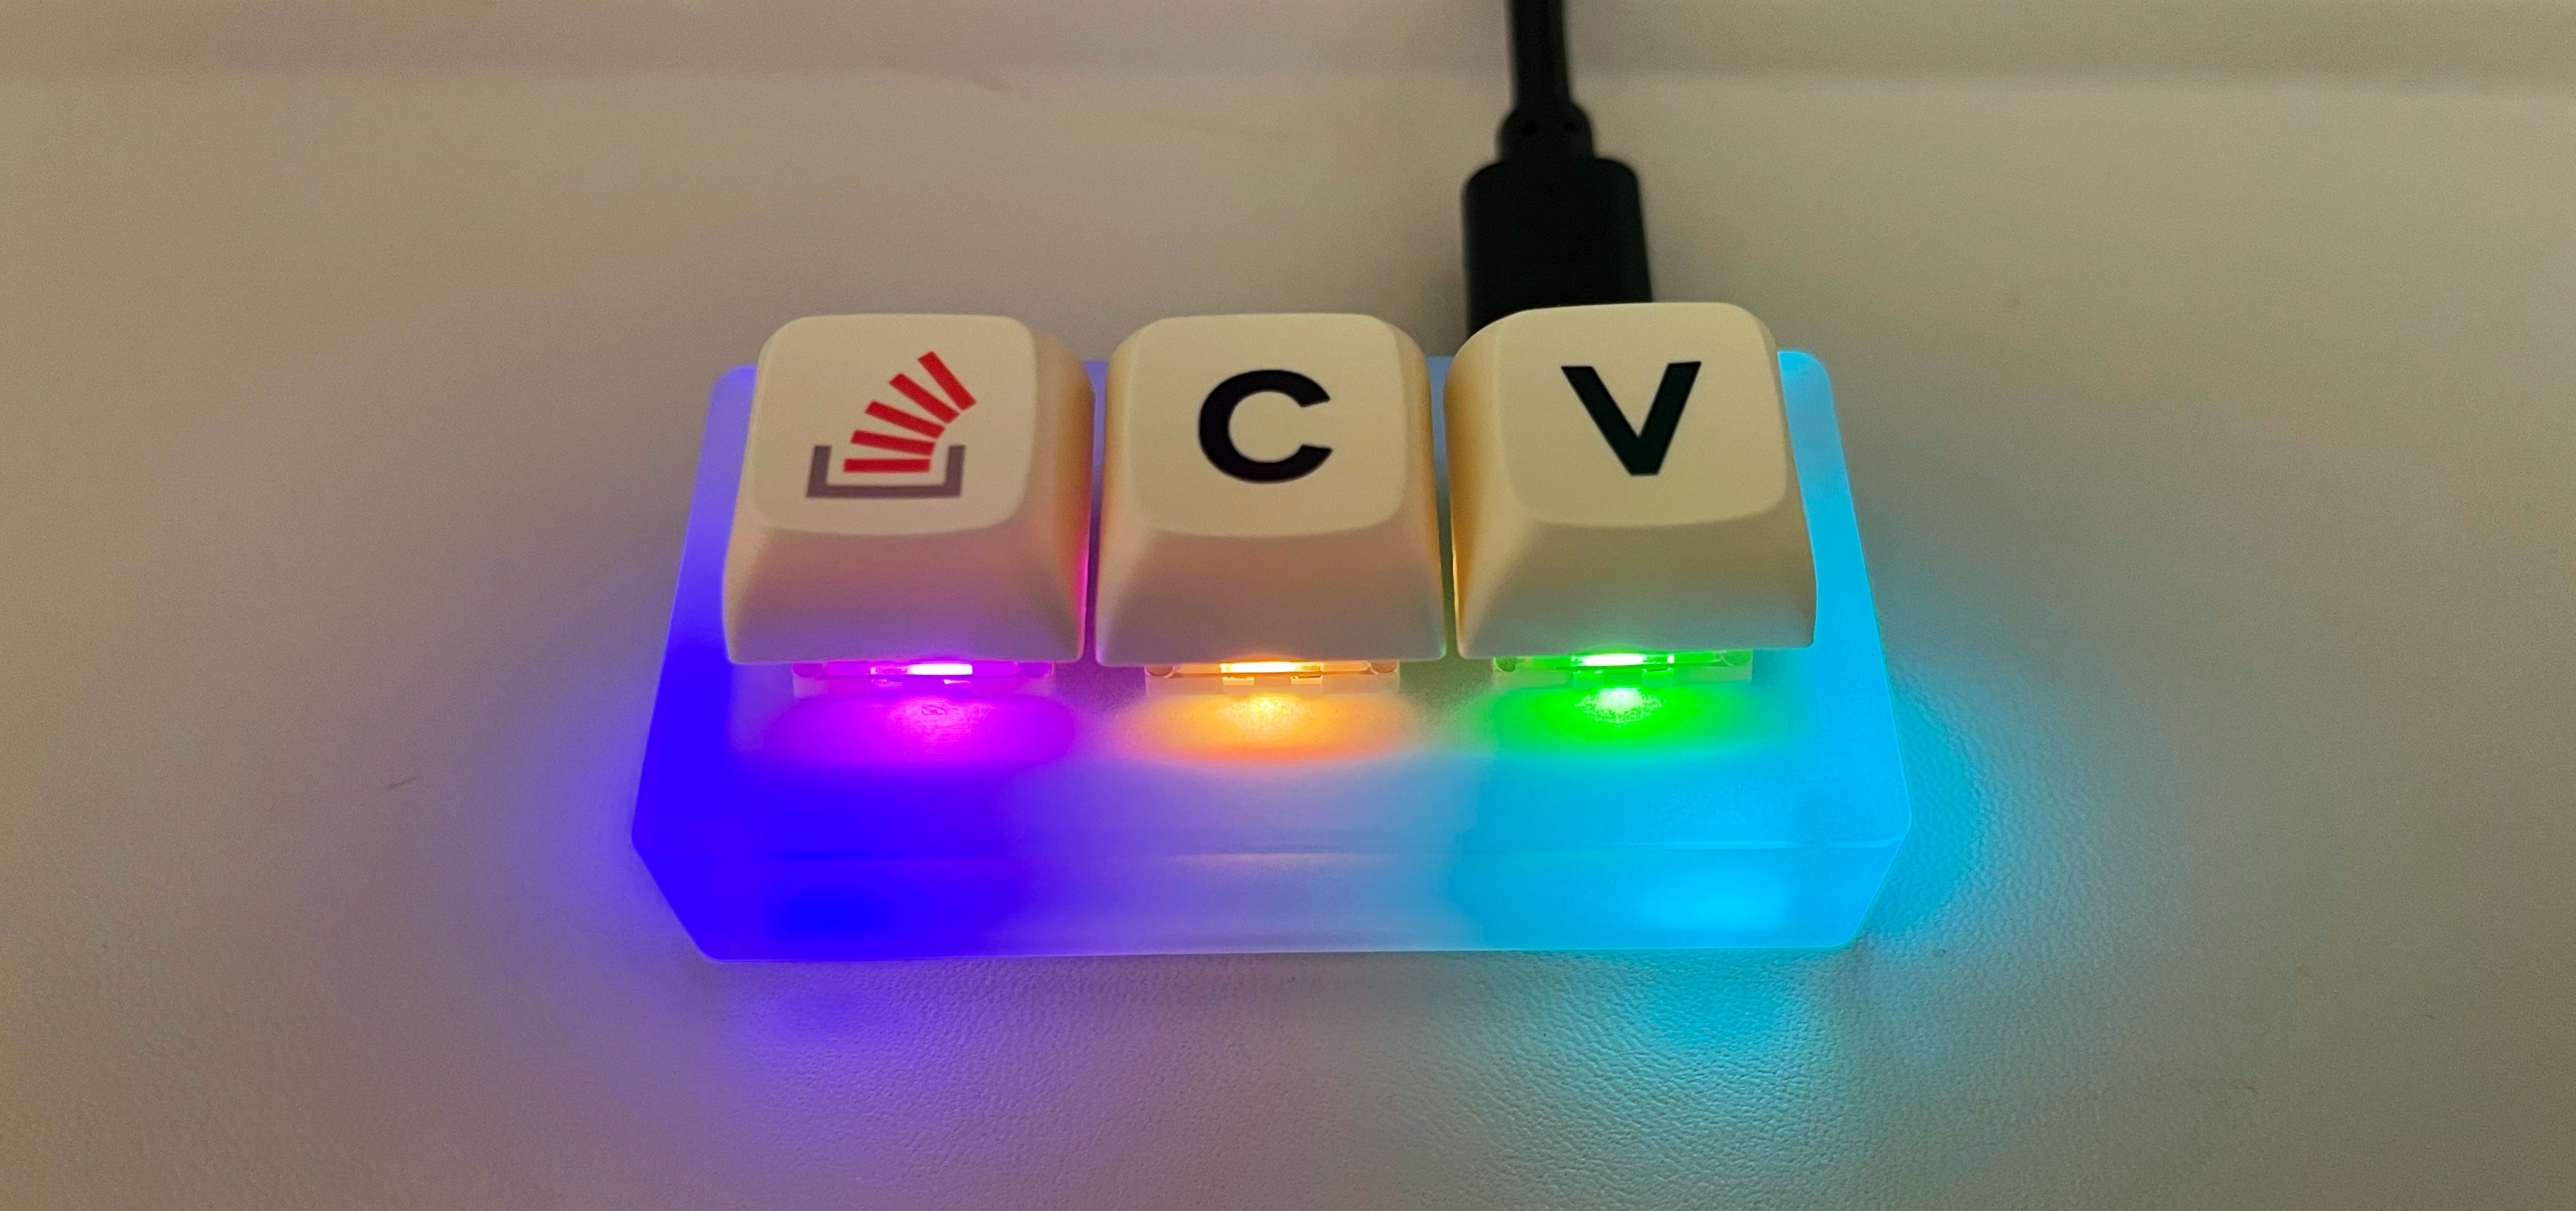 The Key v2 with rainbow swirl LEDs